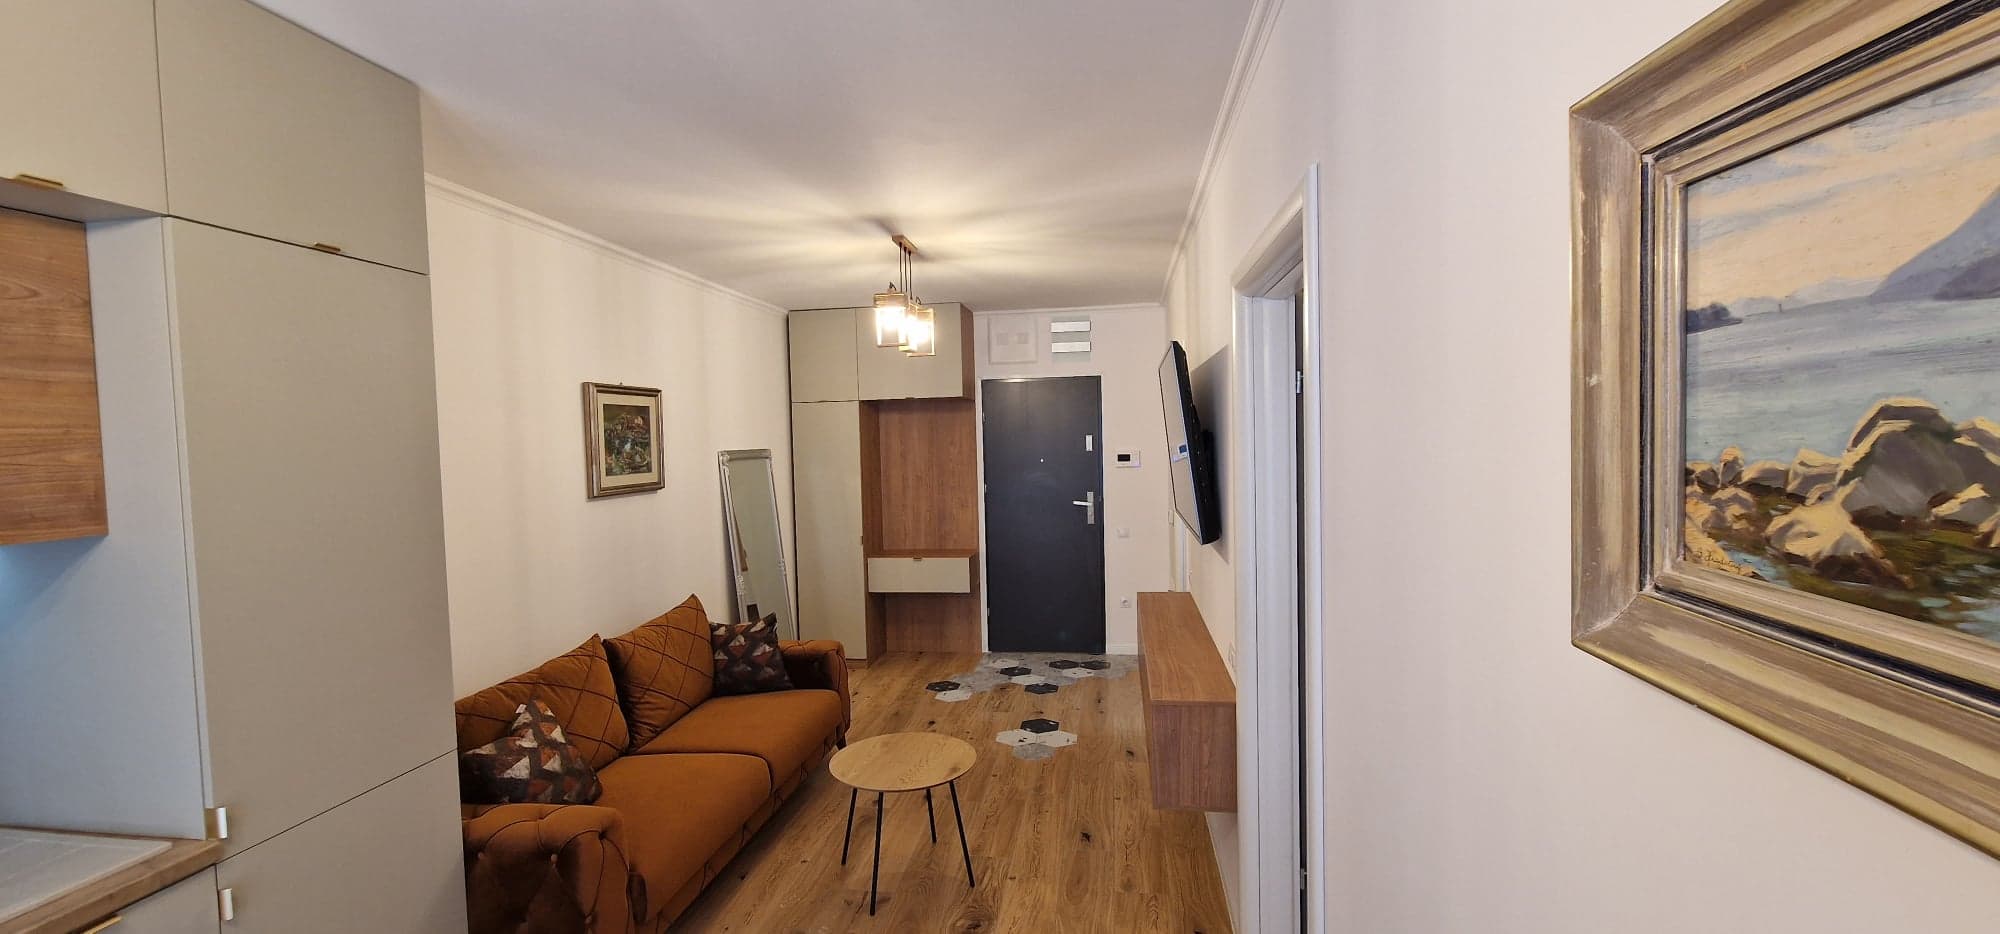 Apartament 2 camere nou de inchiriat | AES Residence Oradea – AP1183